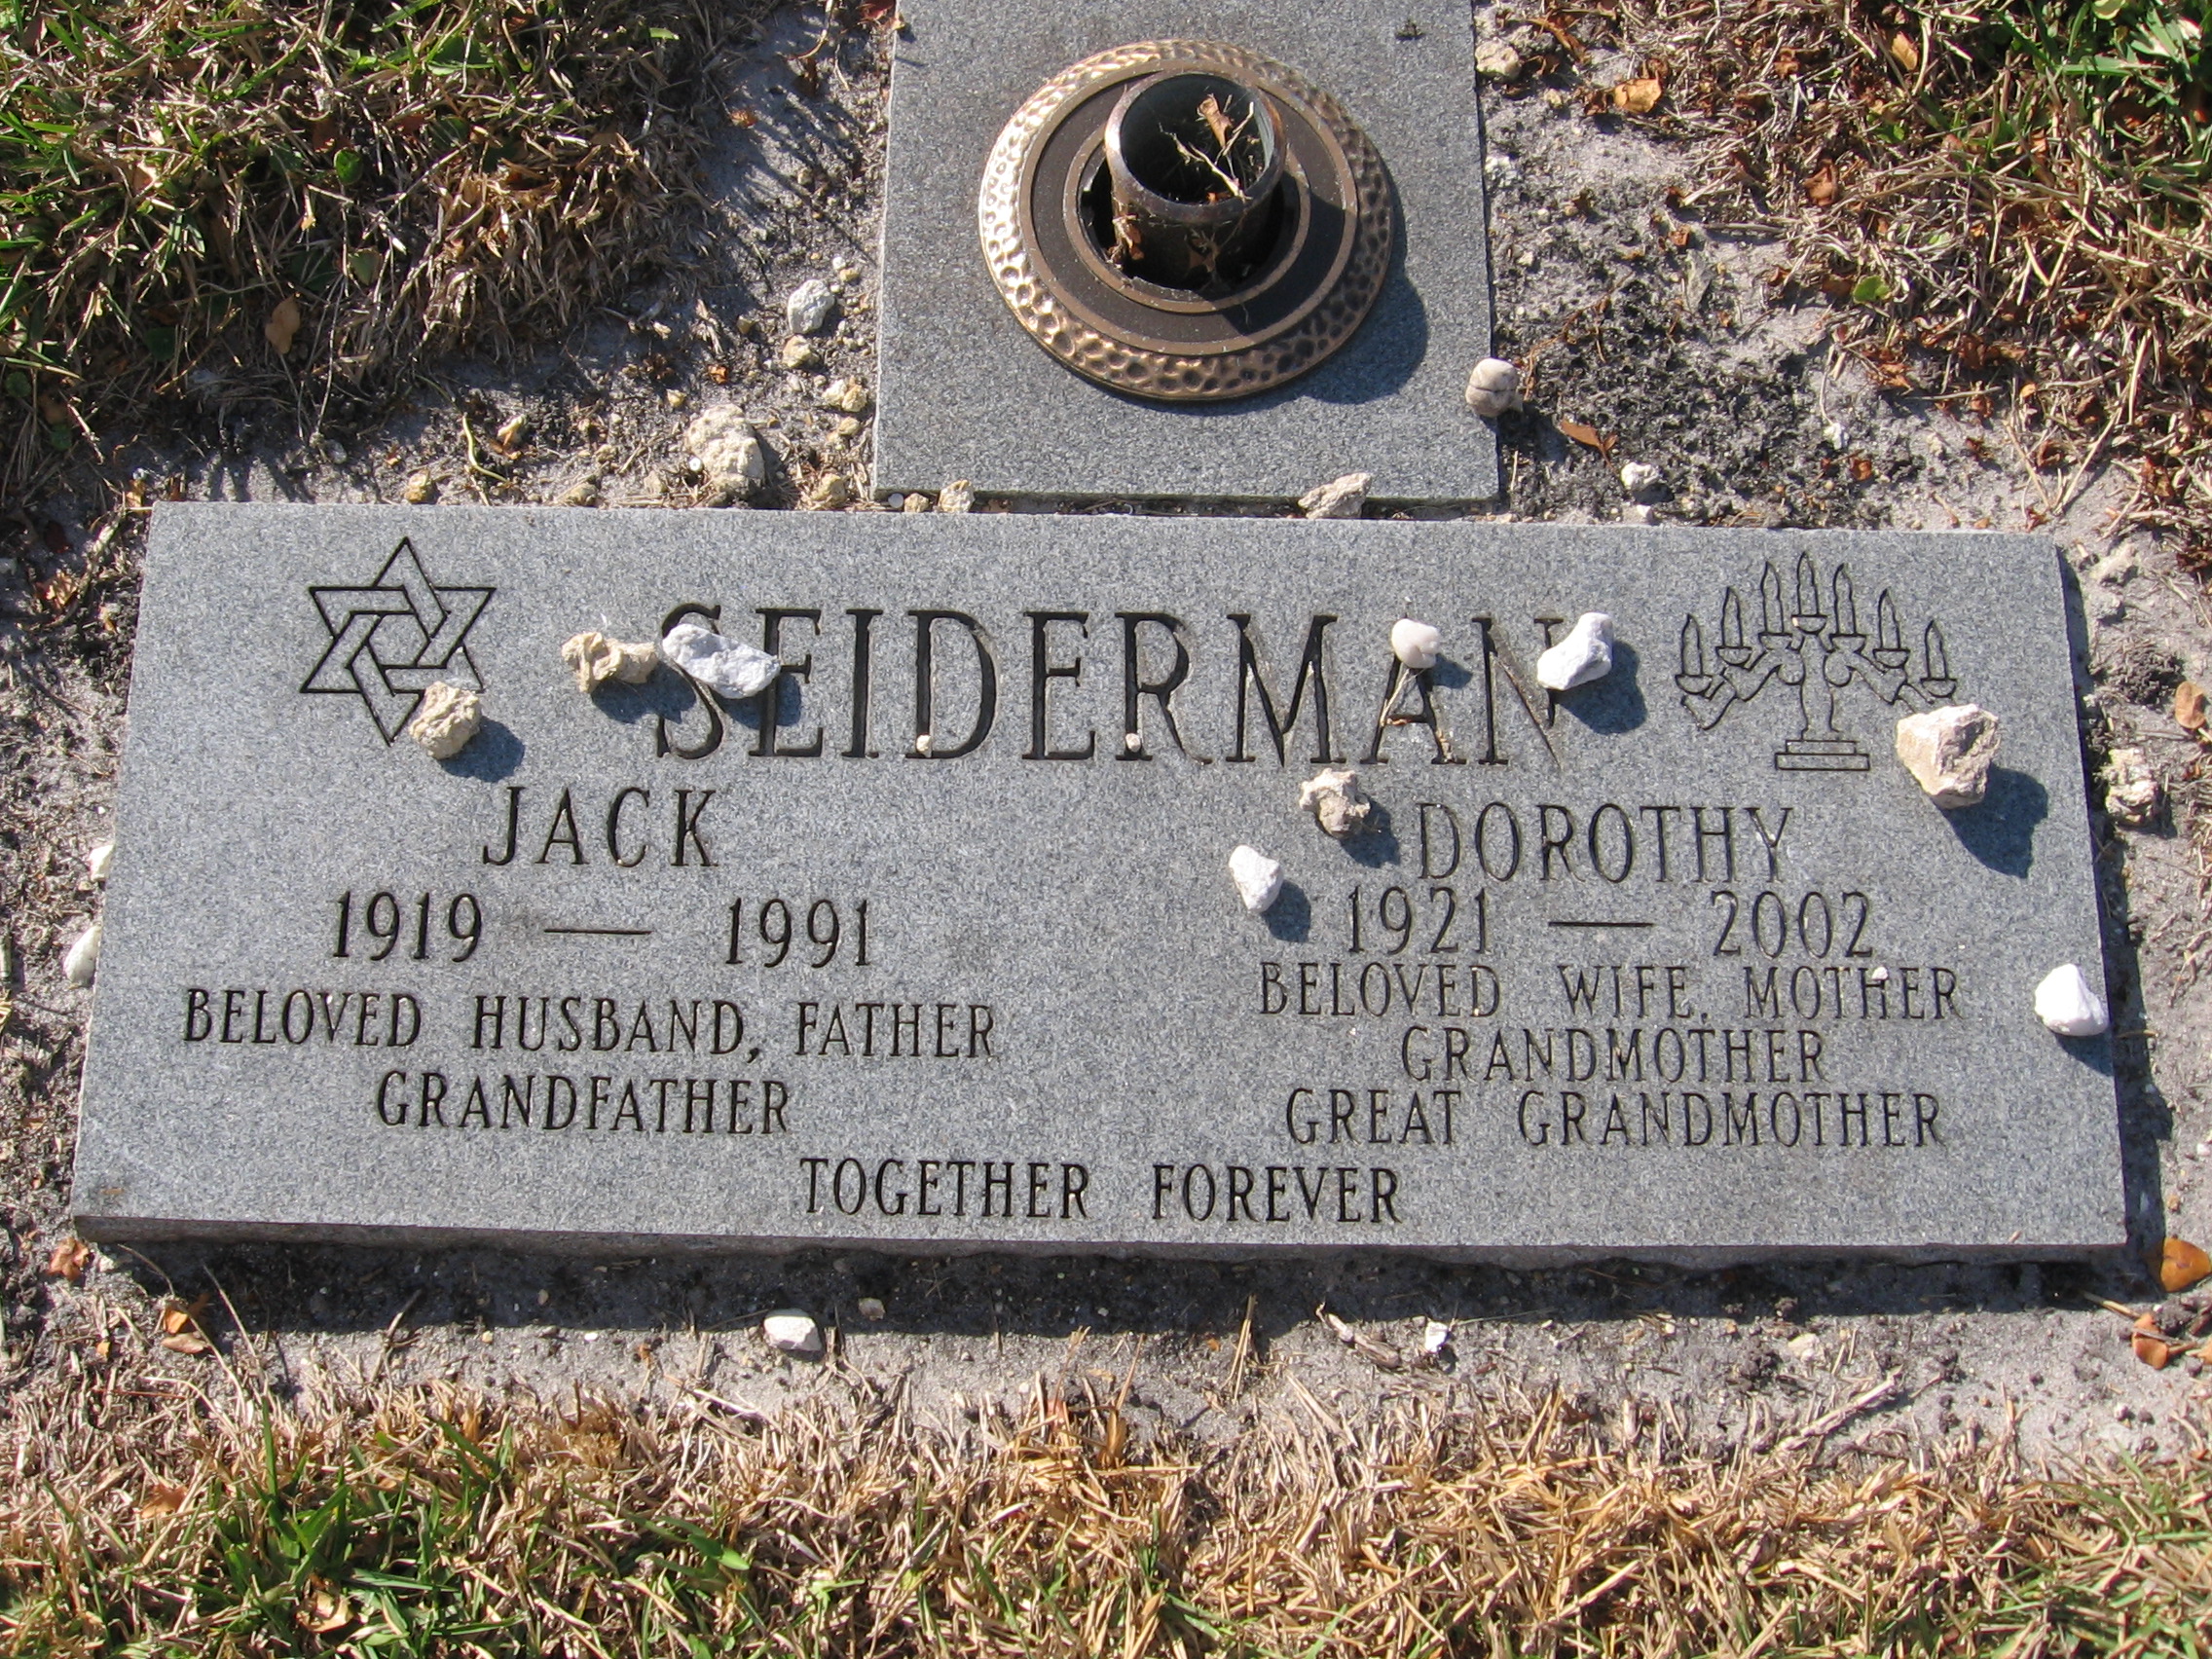 Jack Seiderman